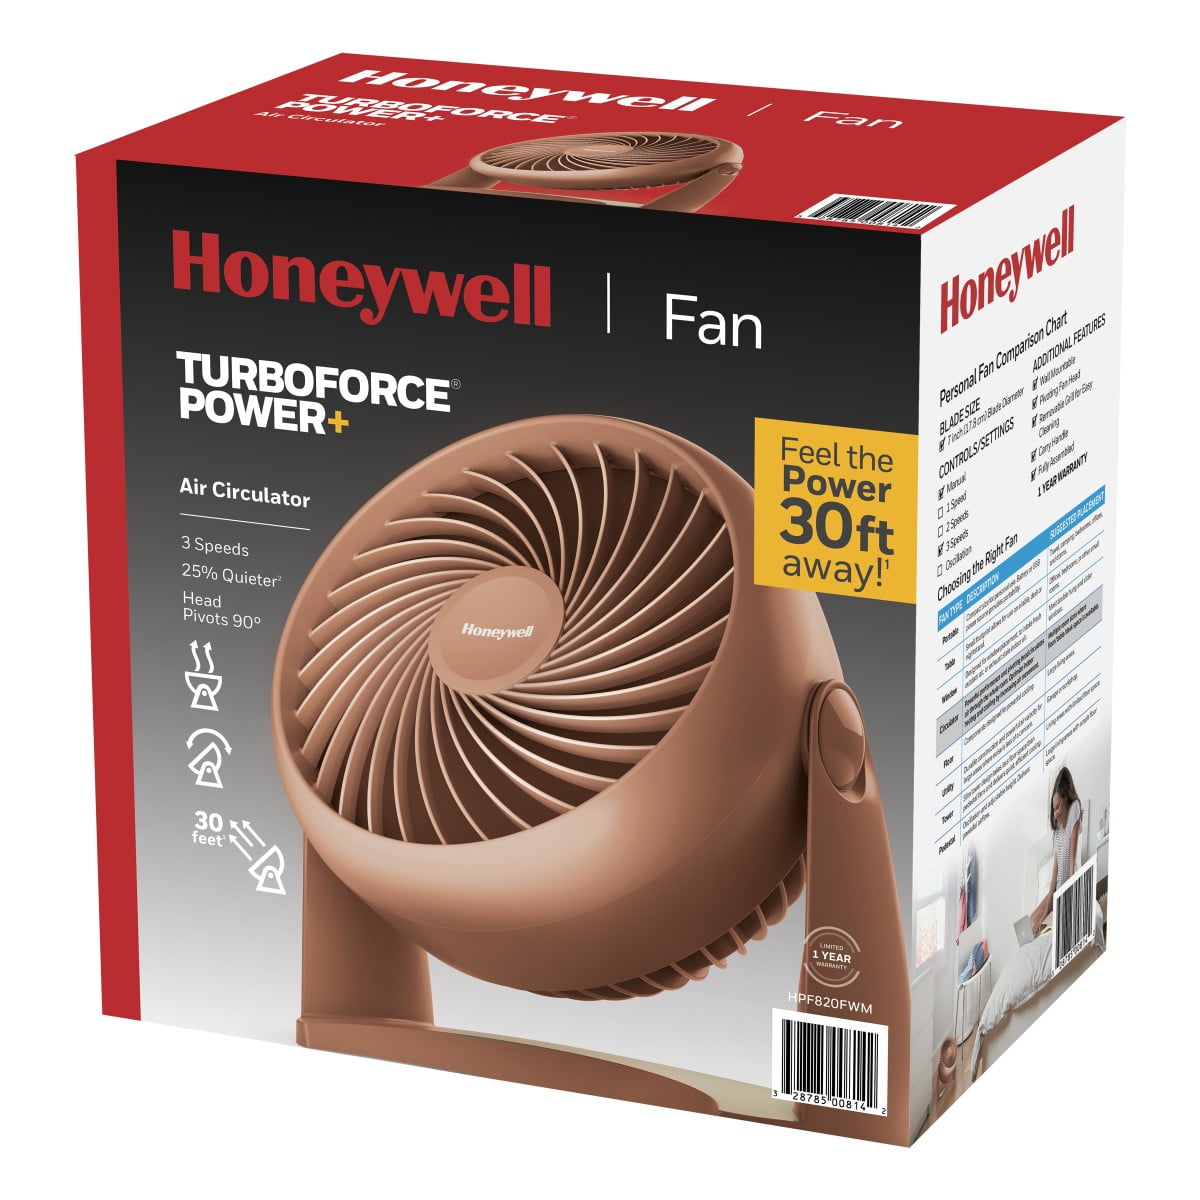 Honeywell Terracotta Turbo Force Power 3-Speed Table Fan, New 